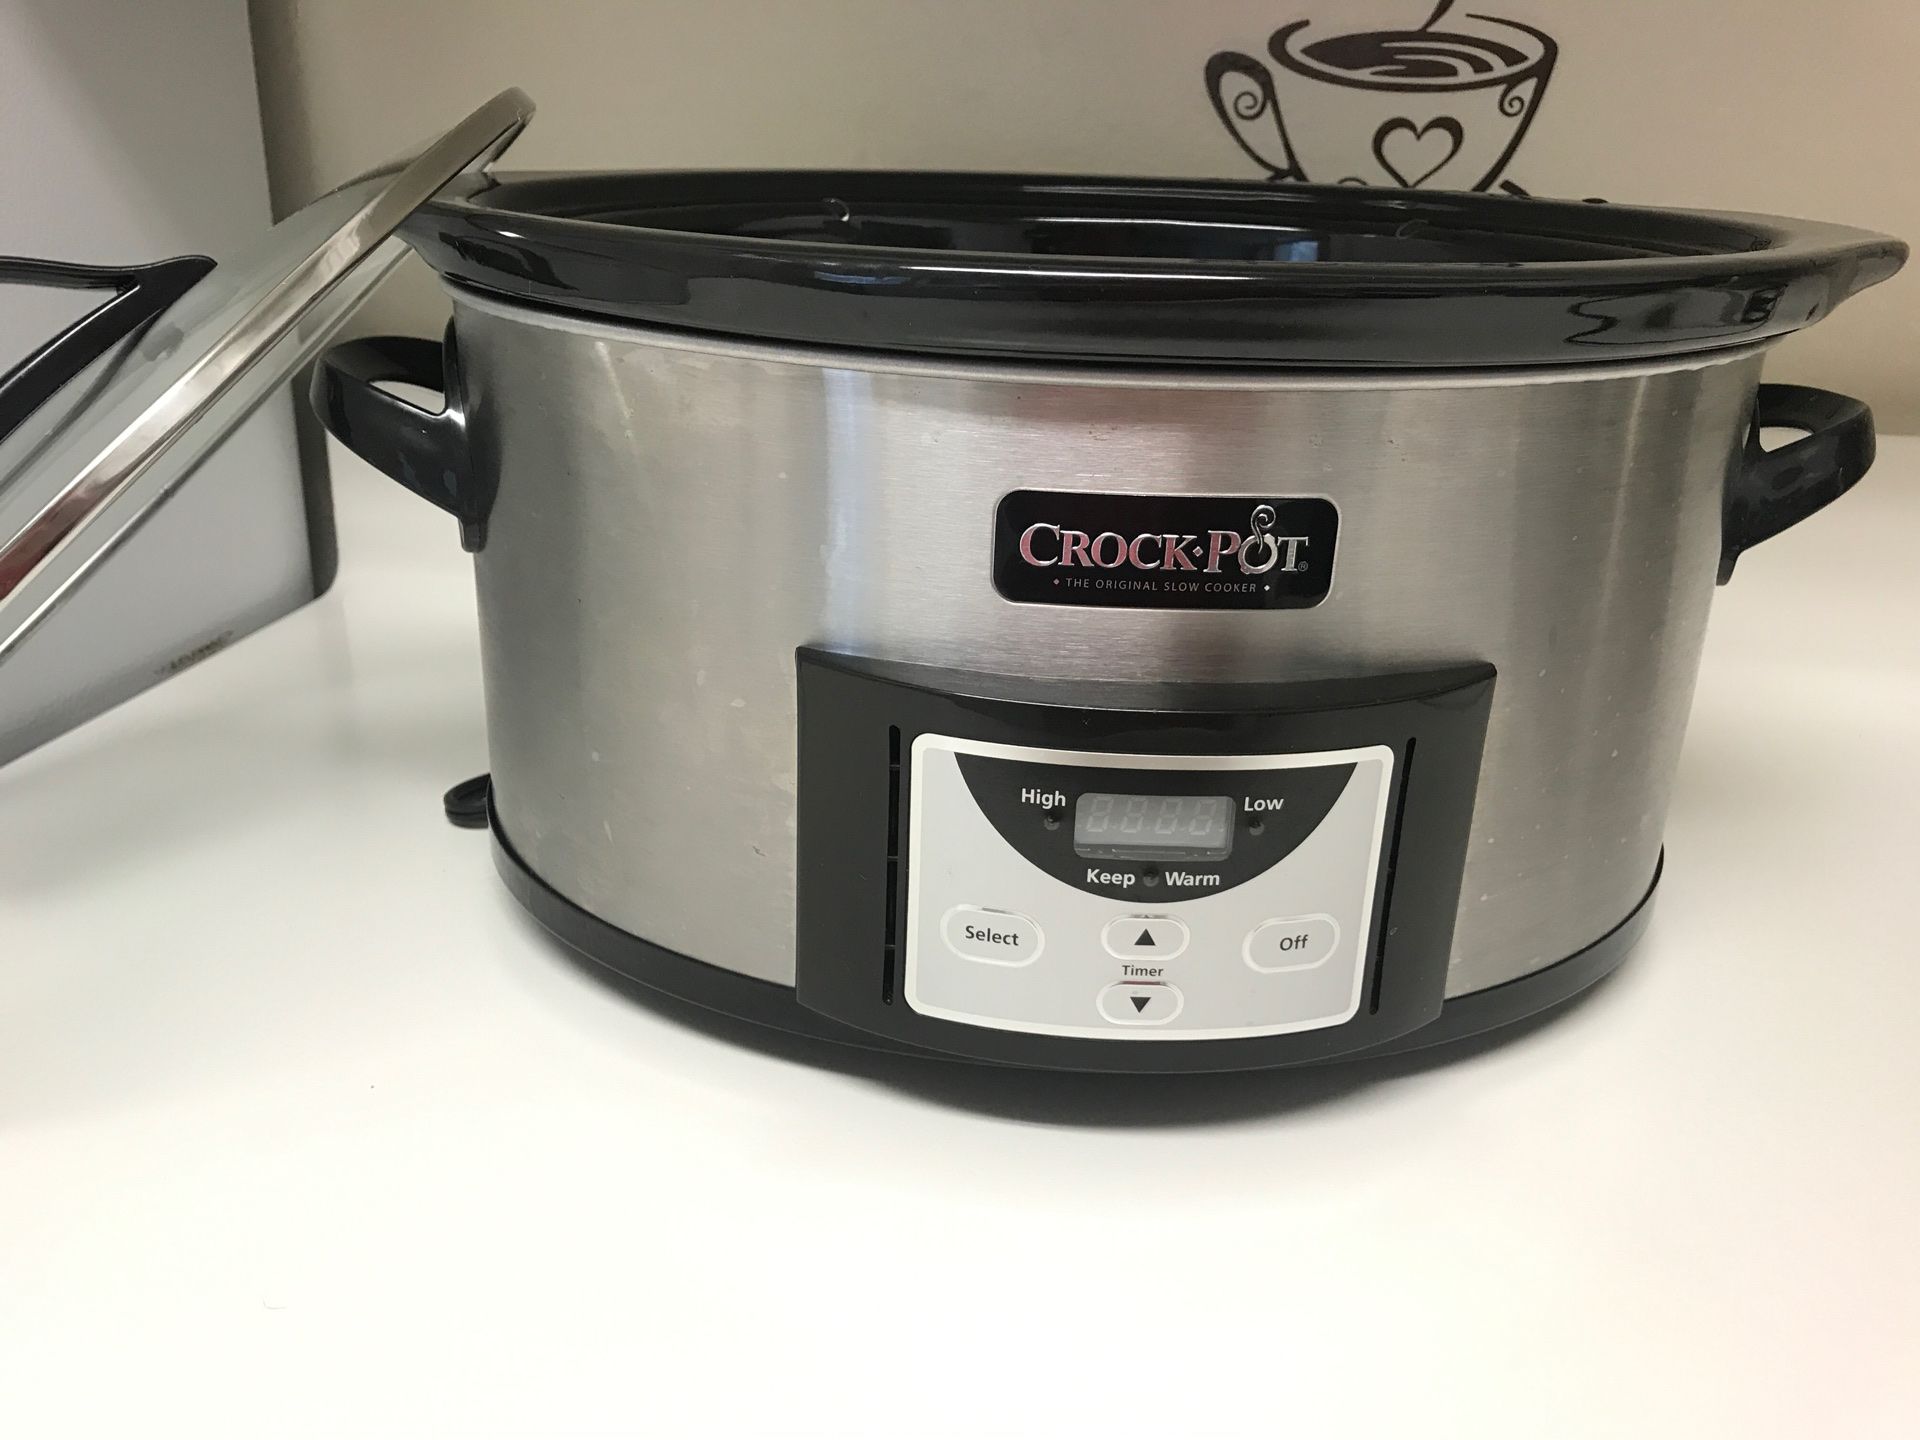 Crock Pot Slow cooker 6 Qt